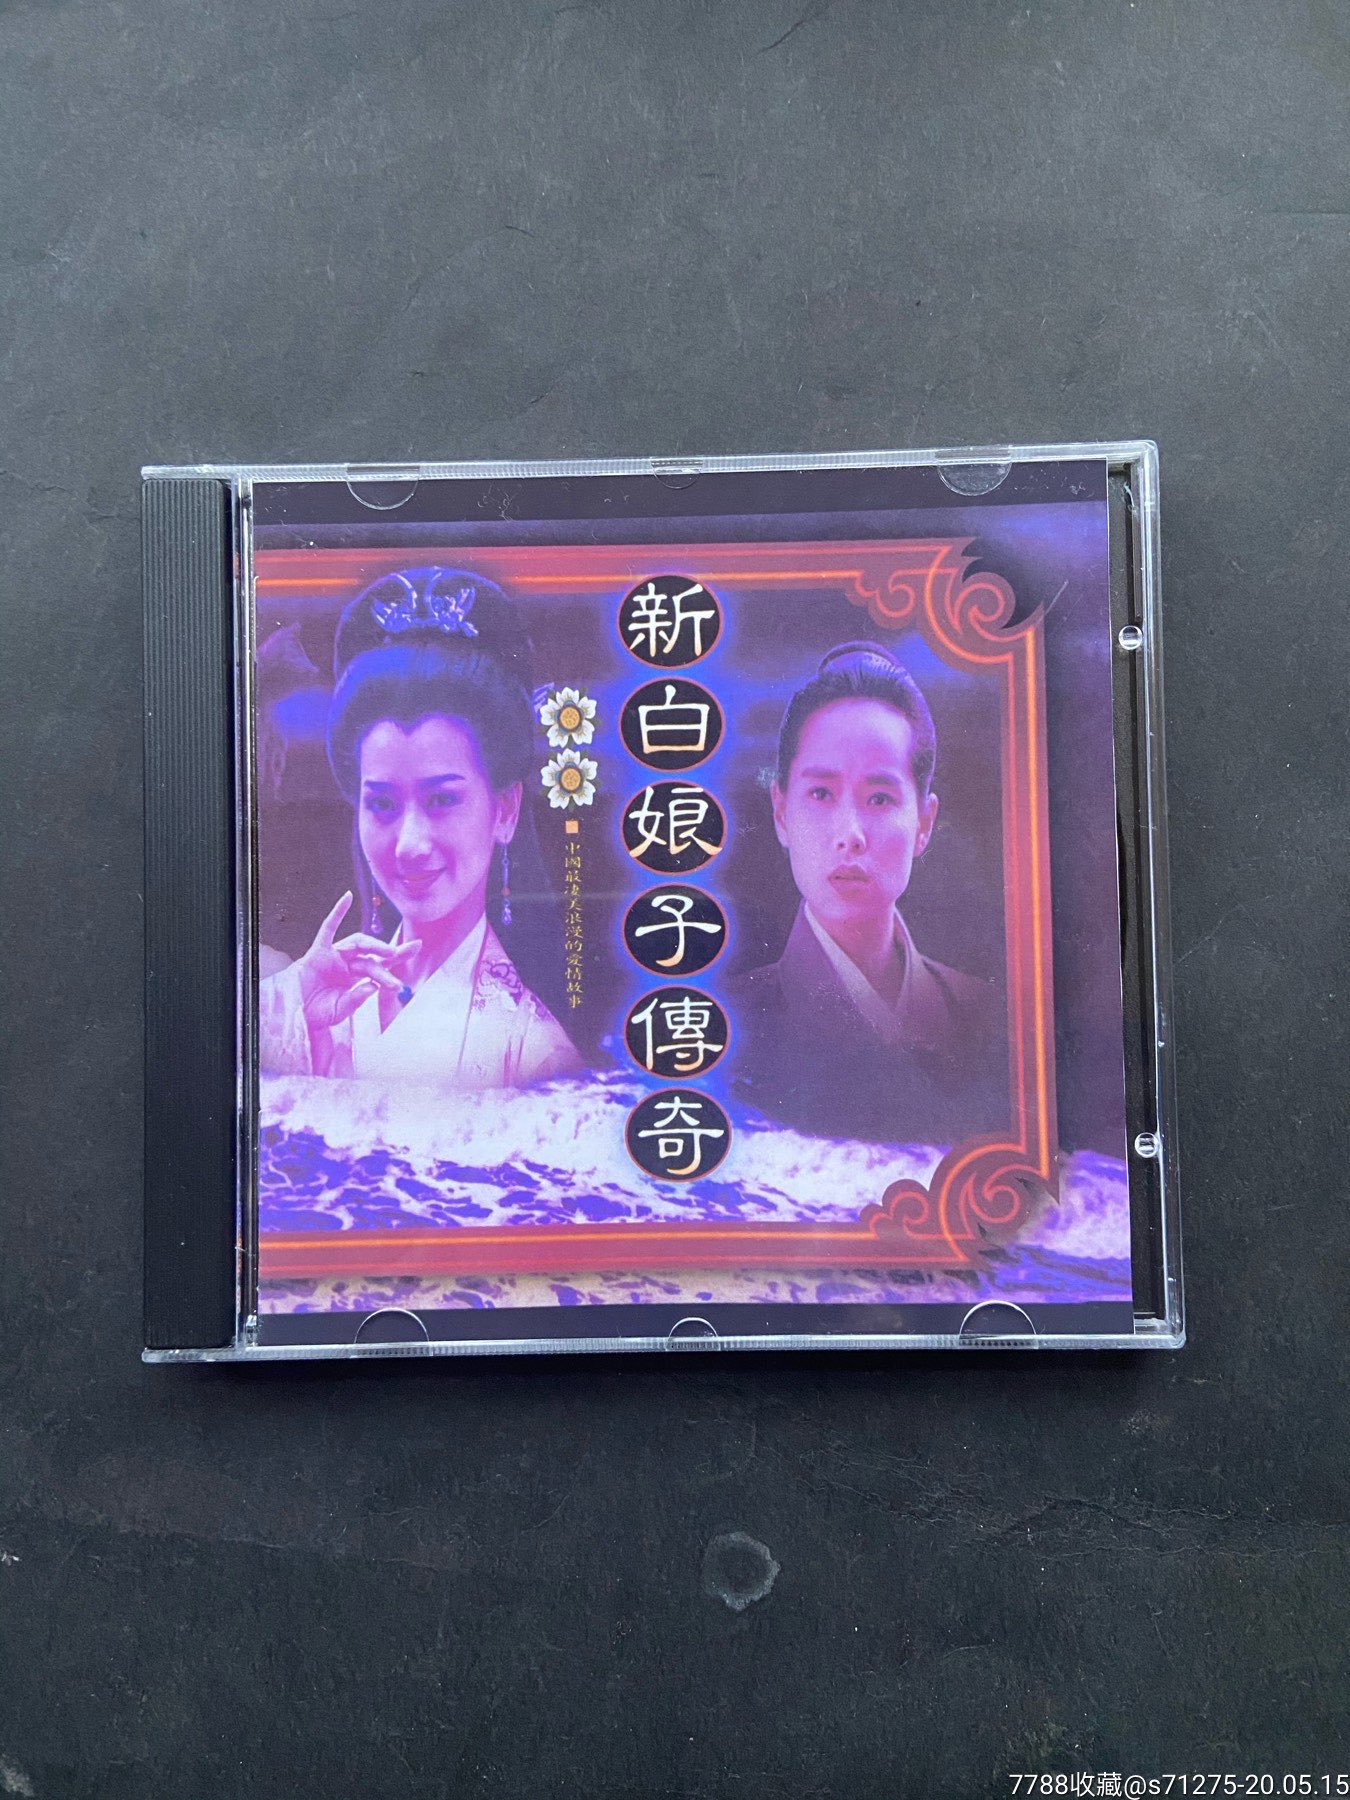 新白娘子传奇台湾版DVD图片